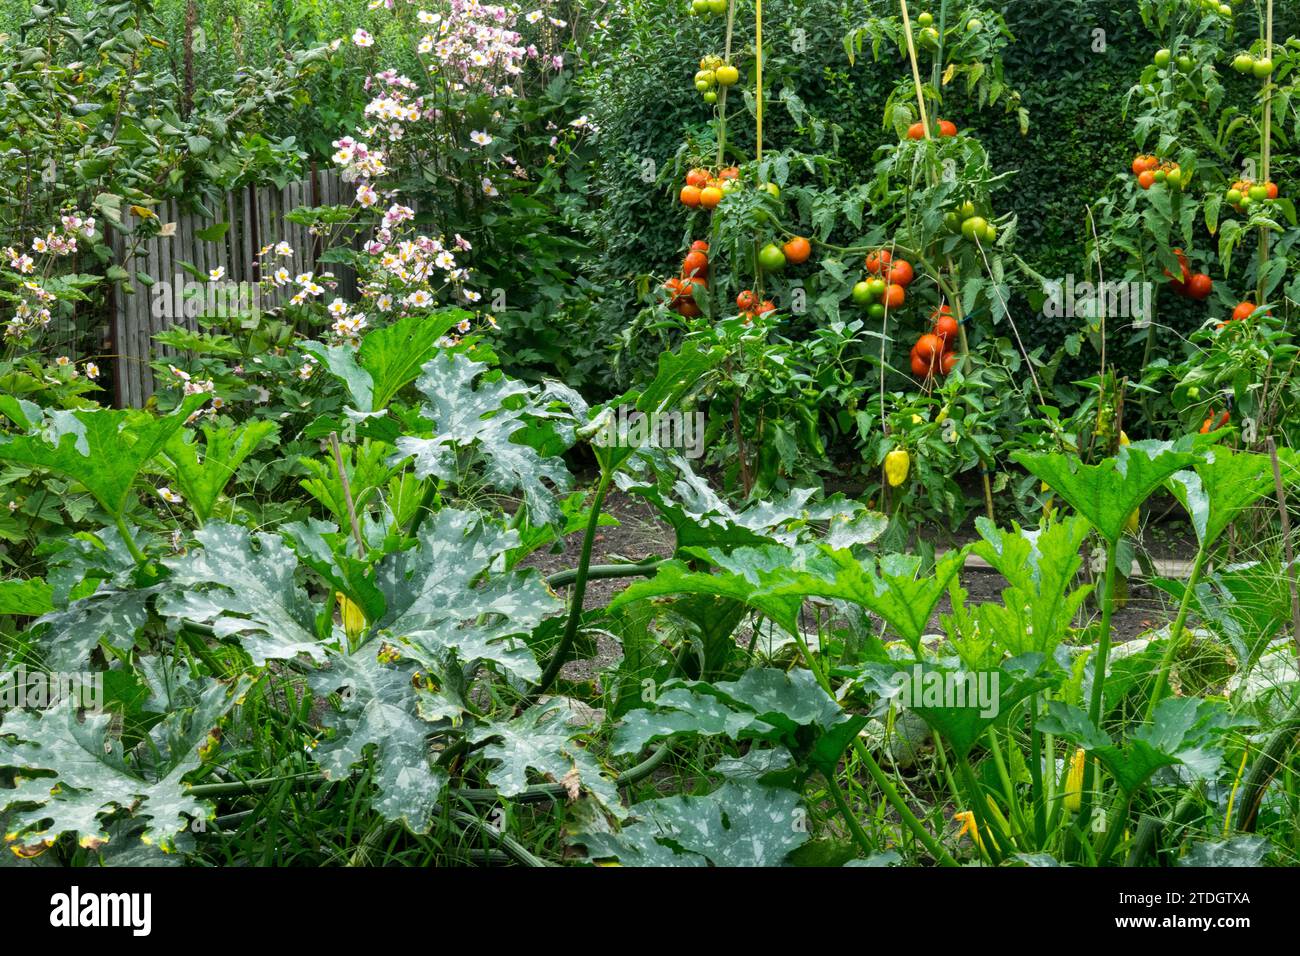 Envahi, légumes, jardin, allotissement, tomates, plantes, en croissance Banque D'Images